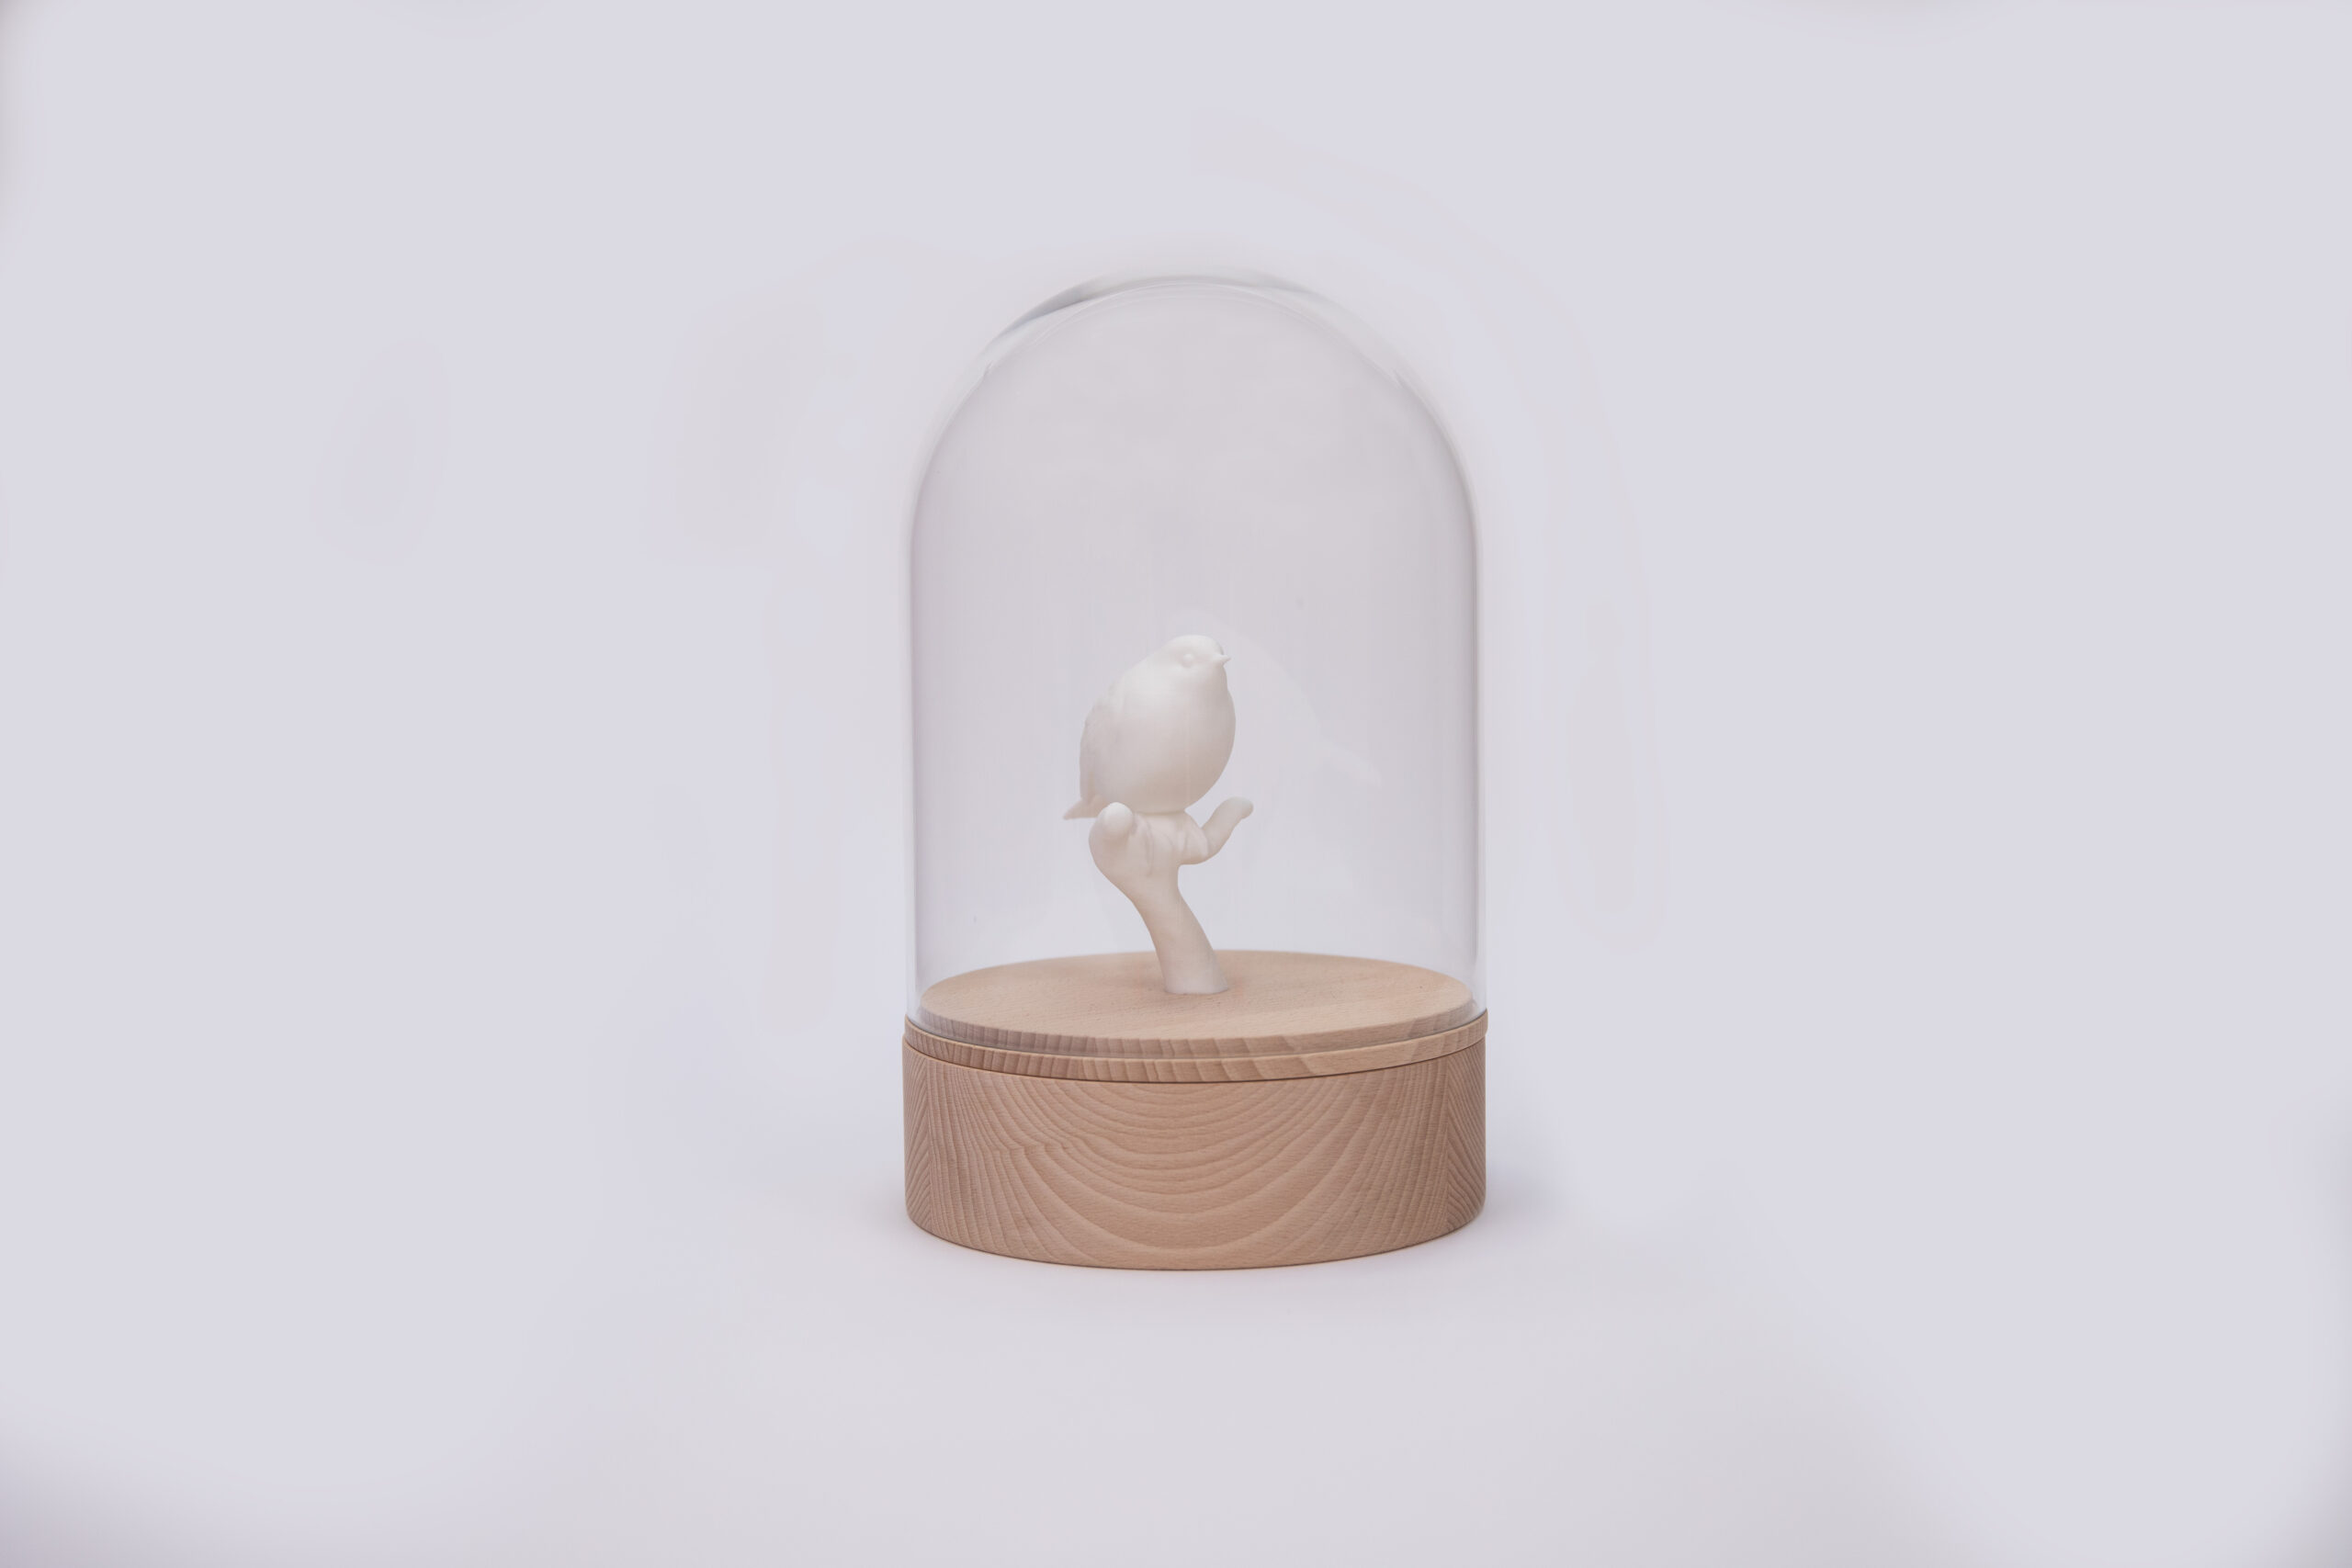 Unieke houten design urn met witte vogel en glazen stolp